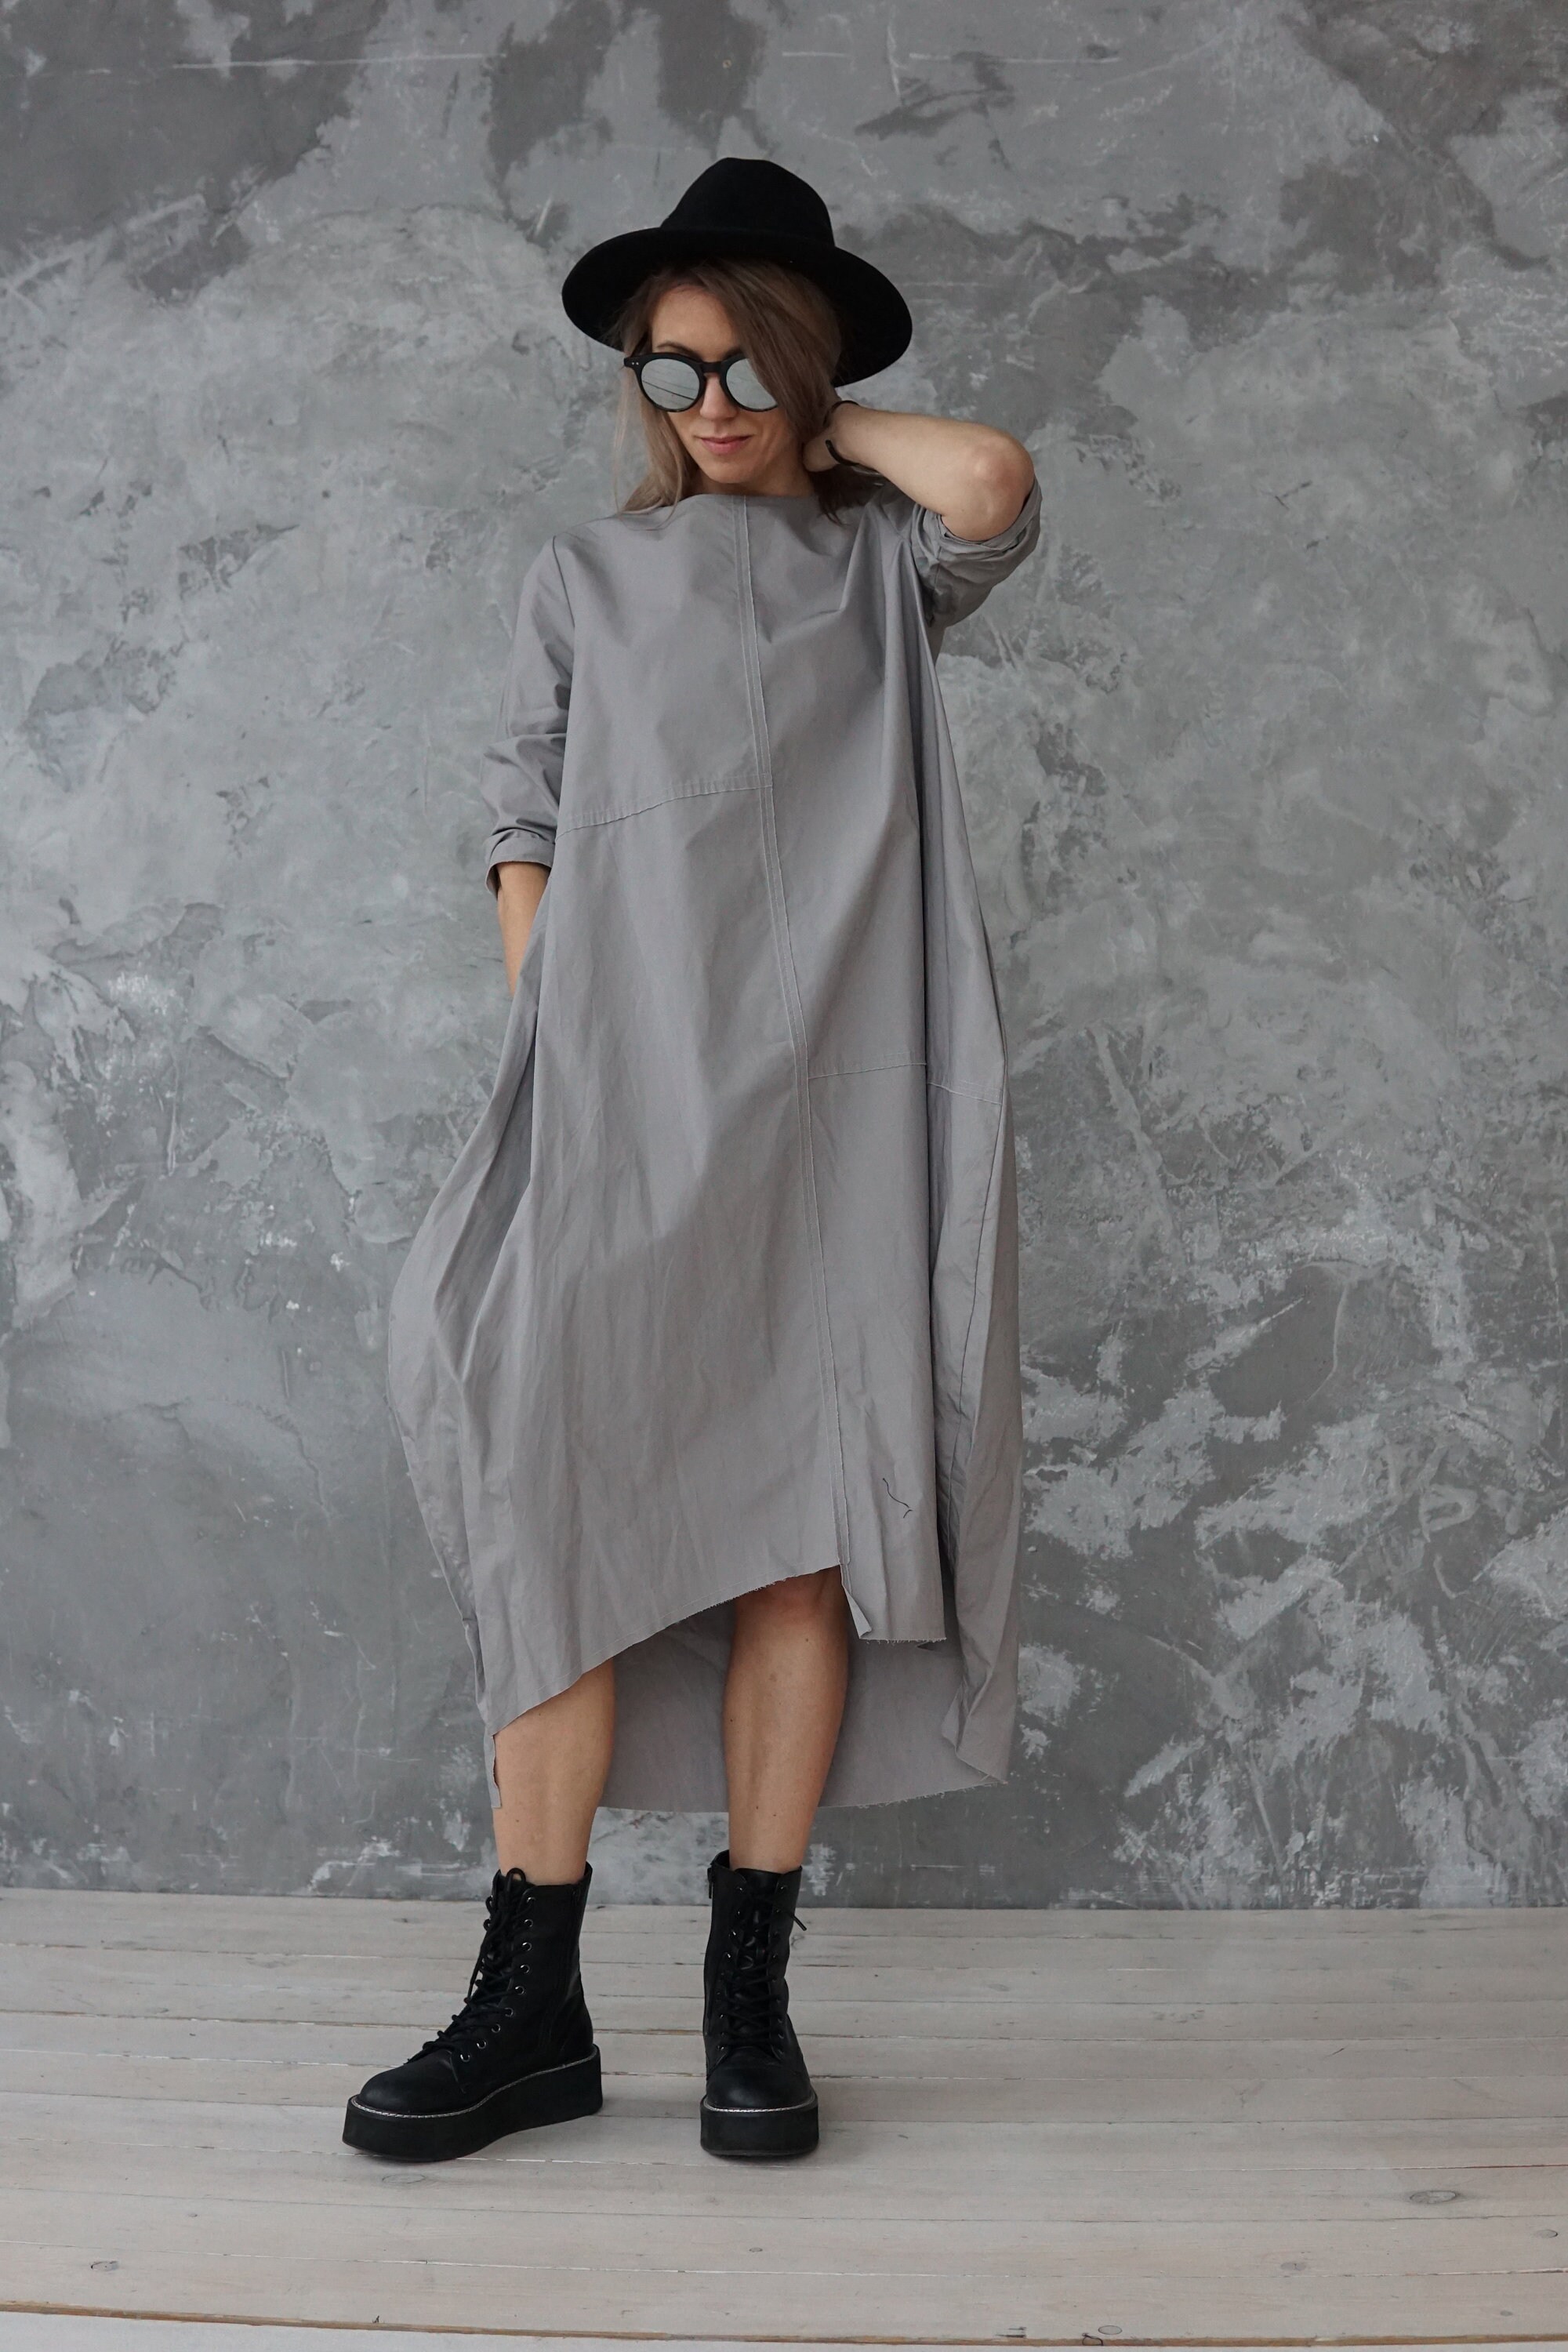 Plus Size Dress / Grey Cotton Dress / Long Grey Dress - Etsy